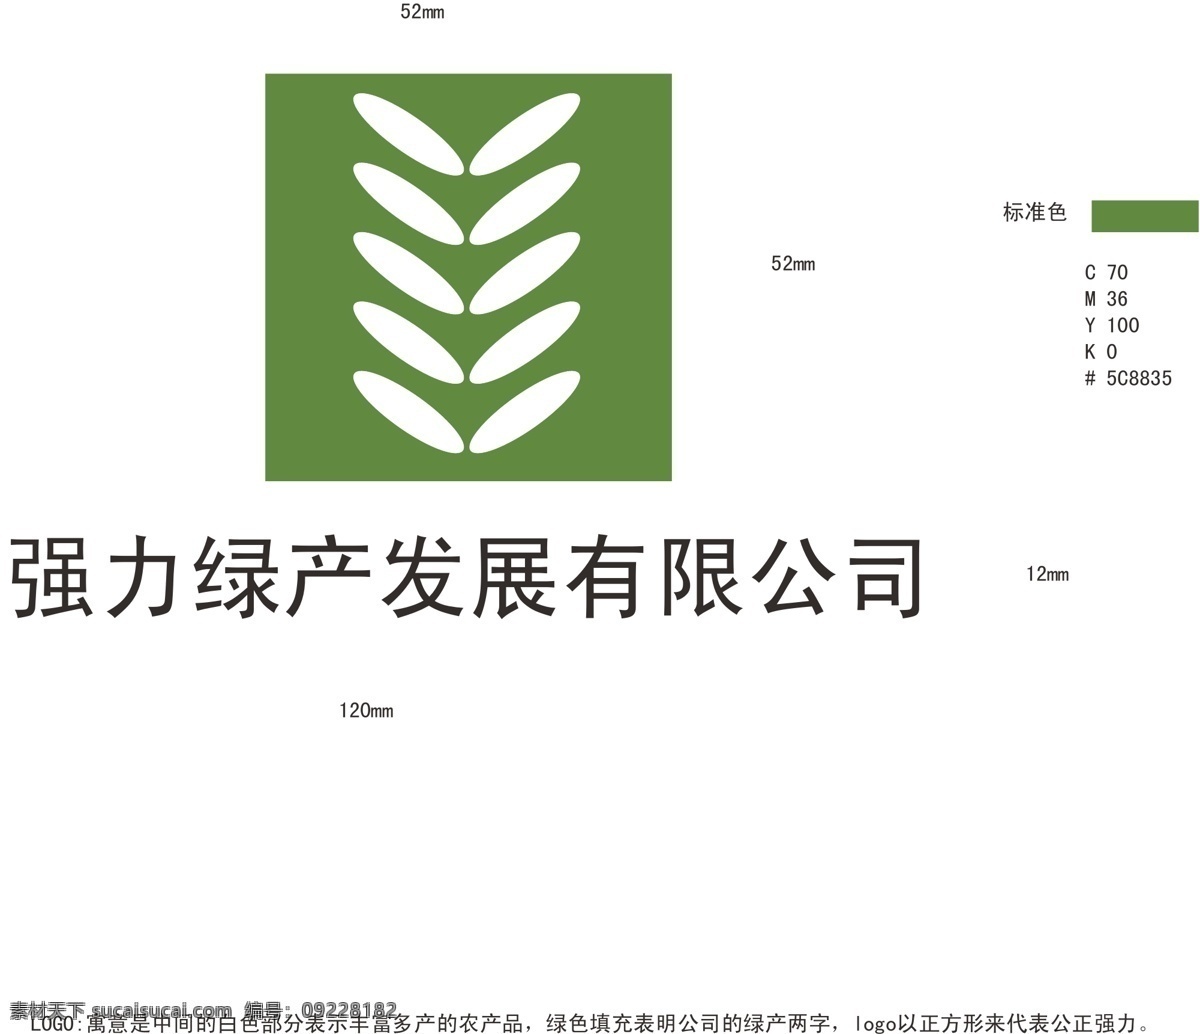 强力 绿 产 logo 标识标志图标 公司 环保 绿色 农业 企业 标志 强力绿产 矢量 矢量图 日常生活